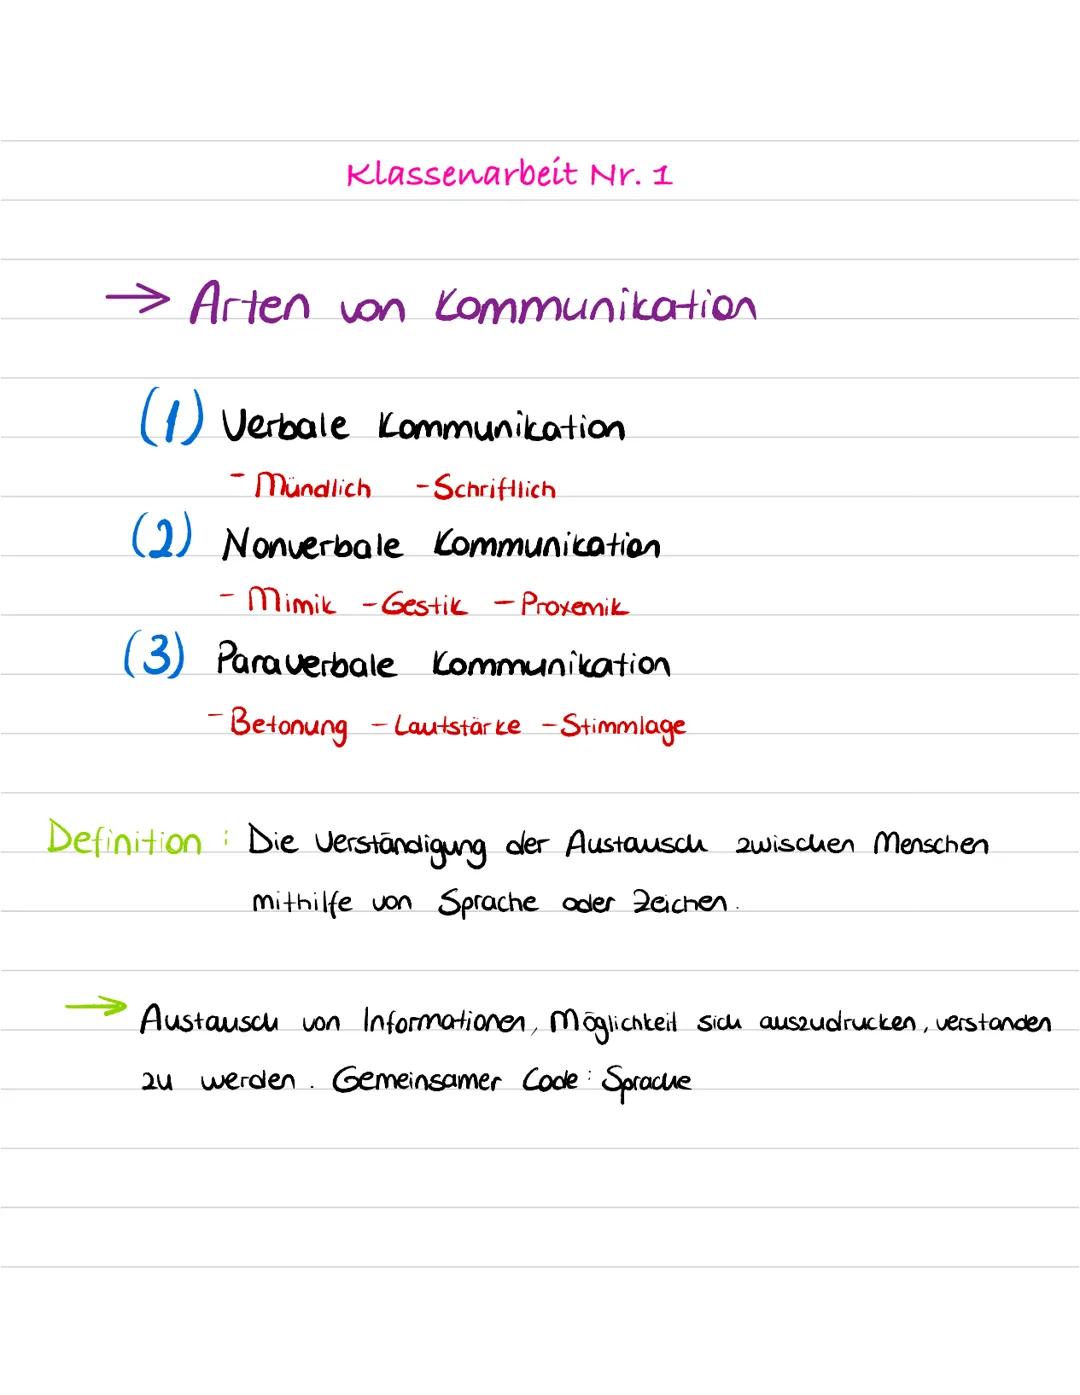  Klassenarbeit Nr. 1
→ Arten von Kommunikation.
(1) Verbale Kommunikation.
Mündlich -Schriftlich
(2) Nonverbale Kommunication.
- Mimik - Ges